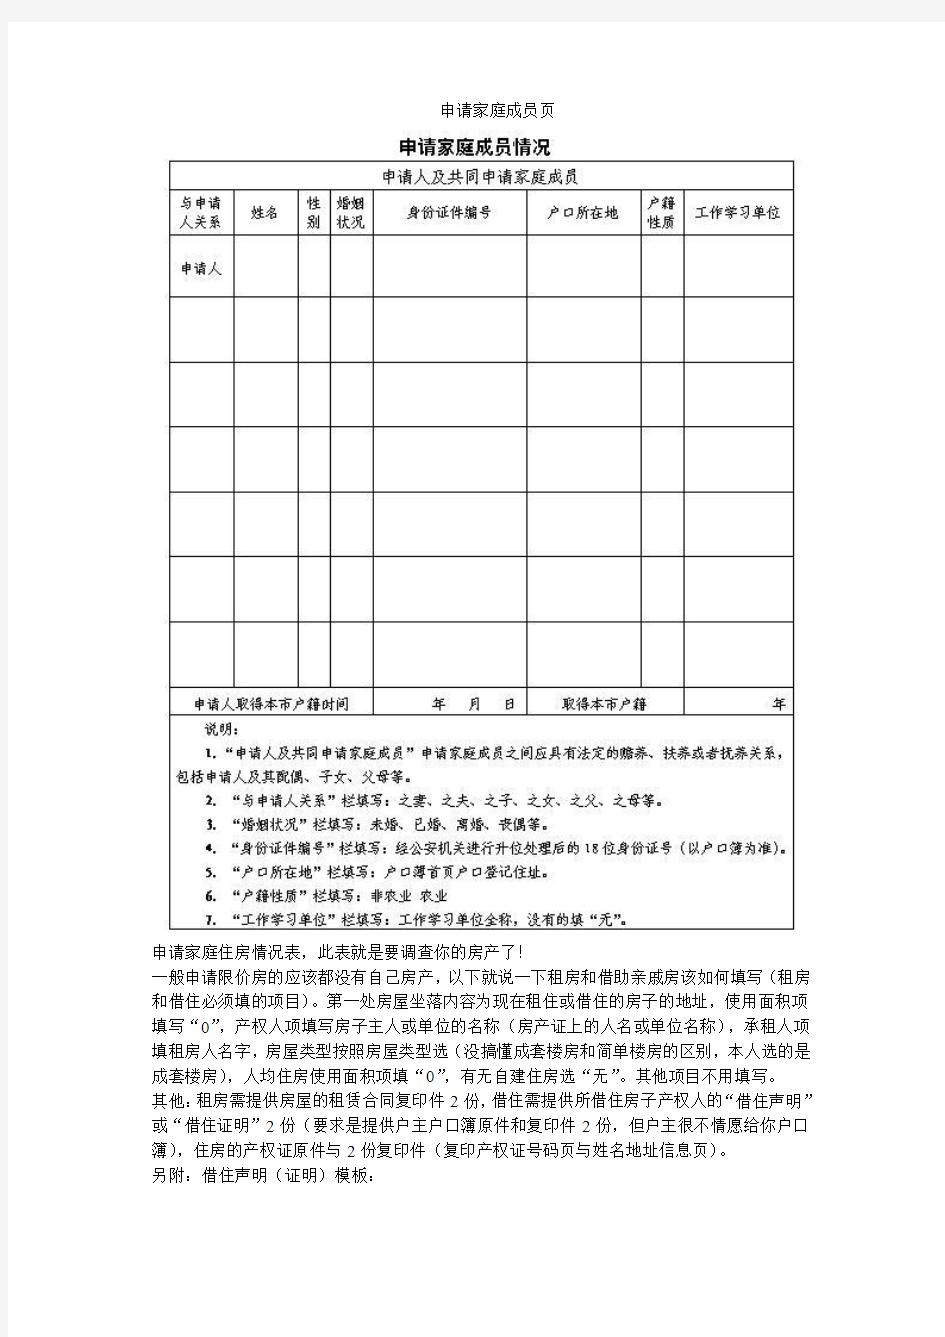 北京限价房申请攻略(含申请表)